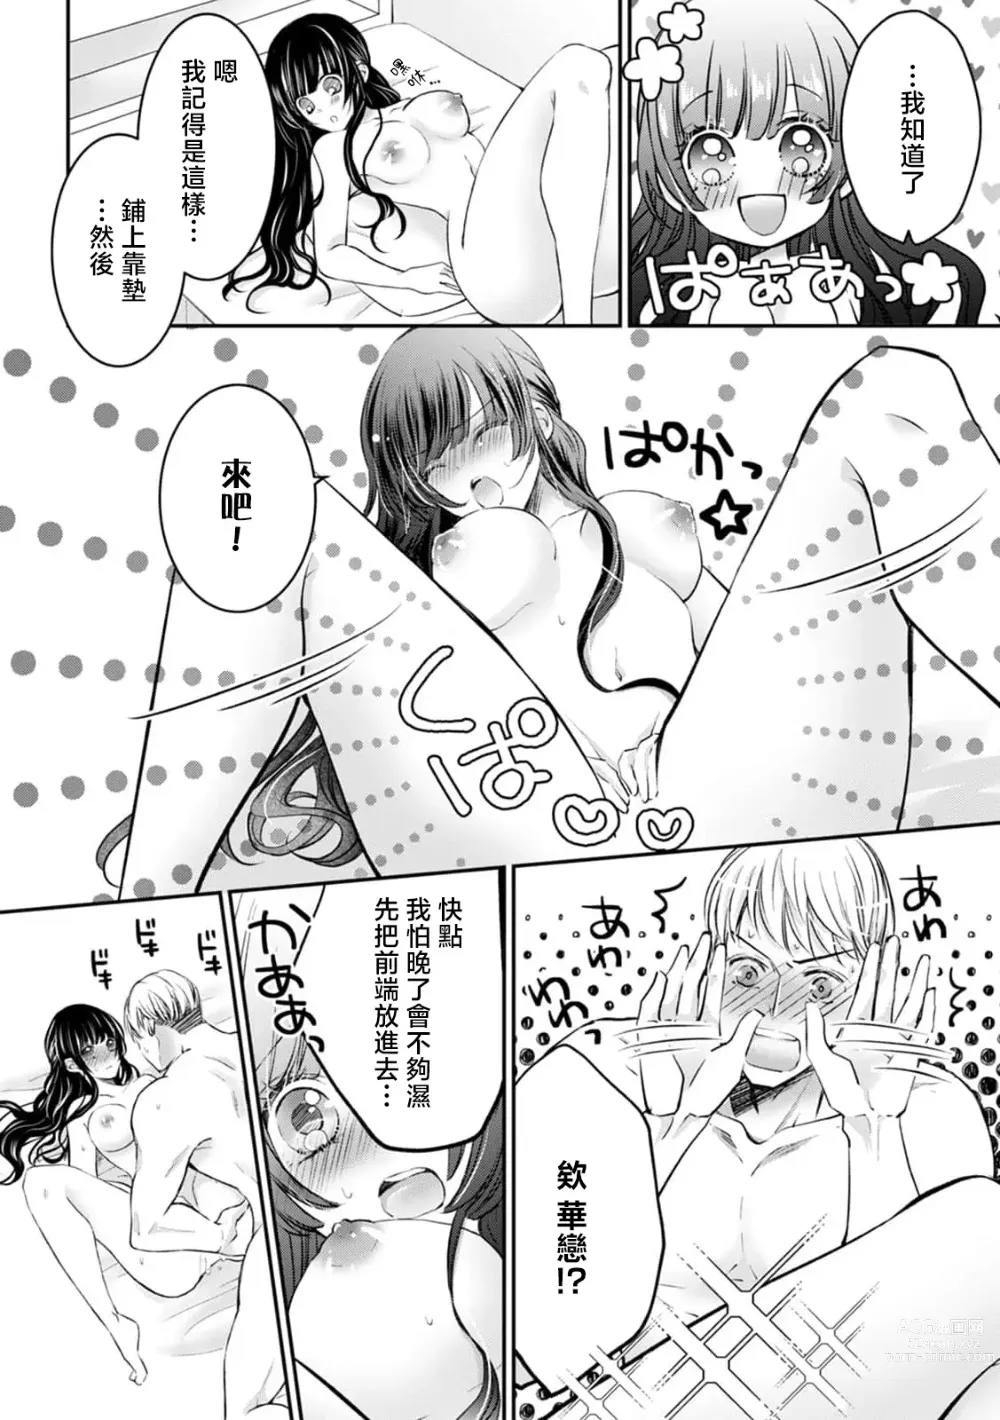 Page 5 of manga 想和SIZE超大的男友合为一体… 连最深处都要幸福满满！